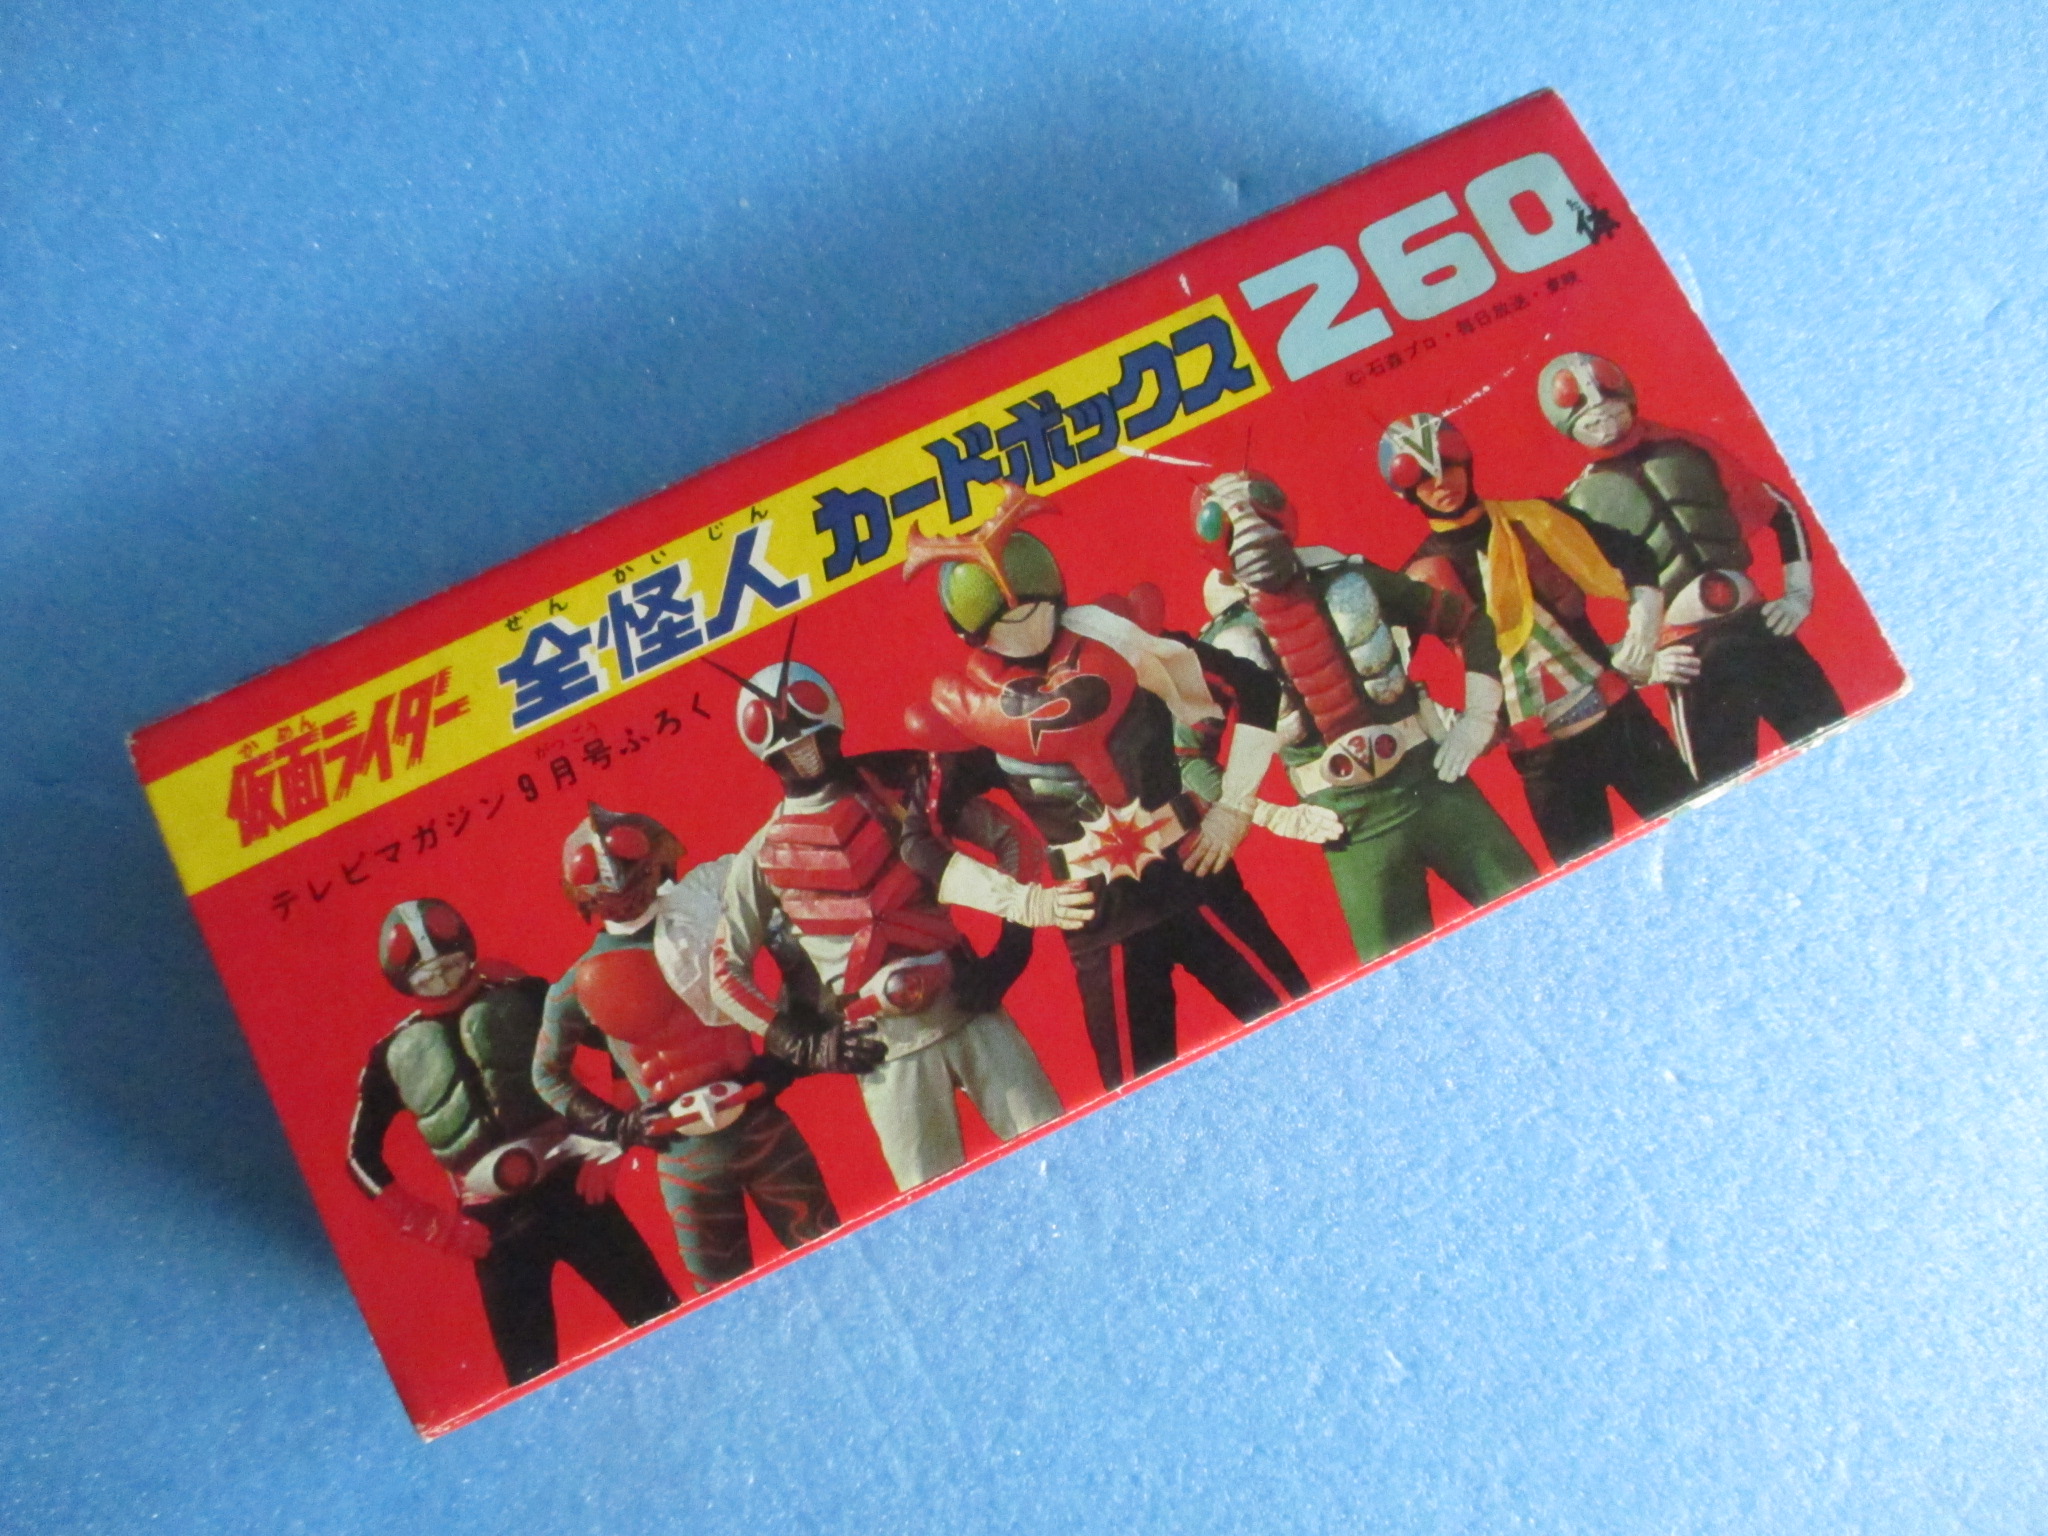  телевизор журнал Kamen Rider все загадочная личность карта box [ б/у товар ]